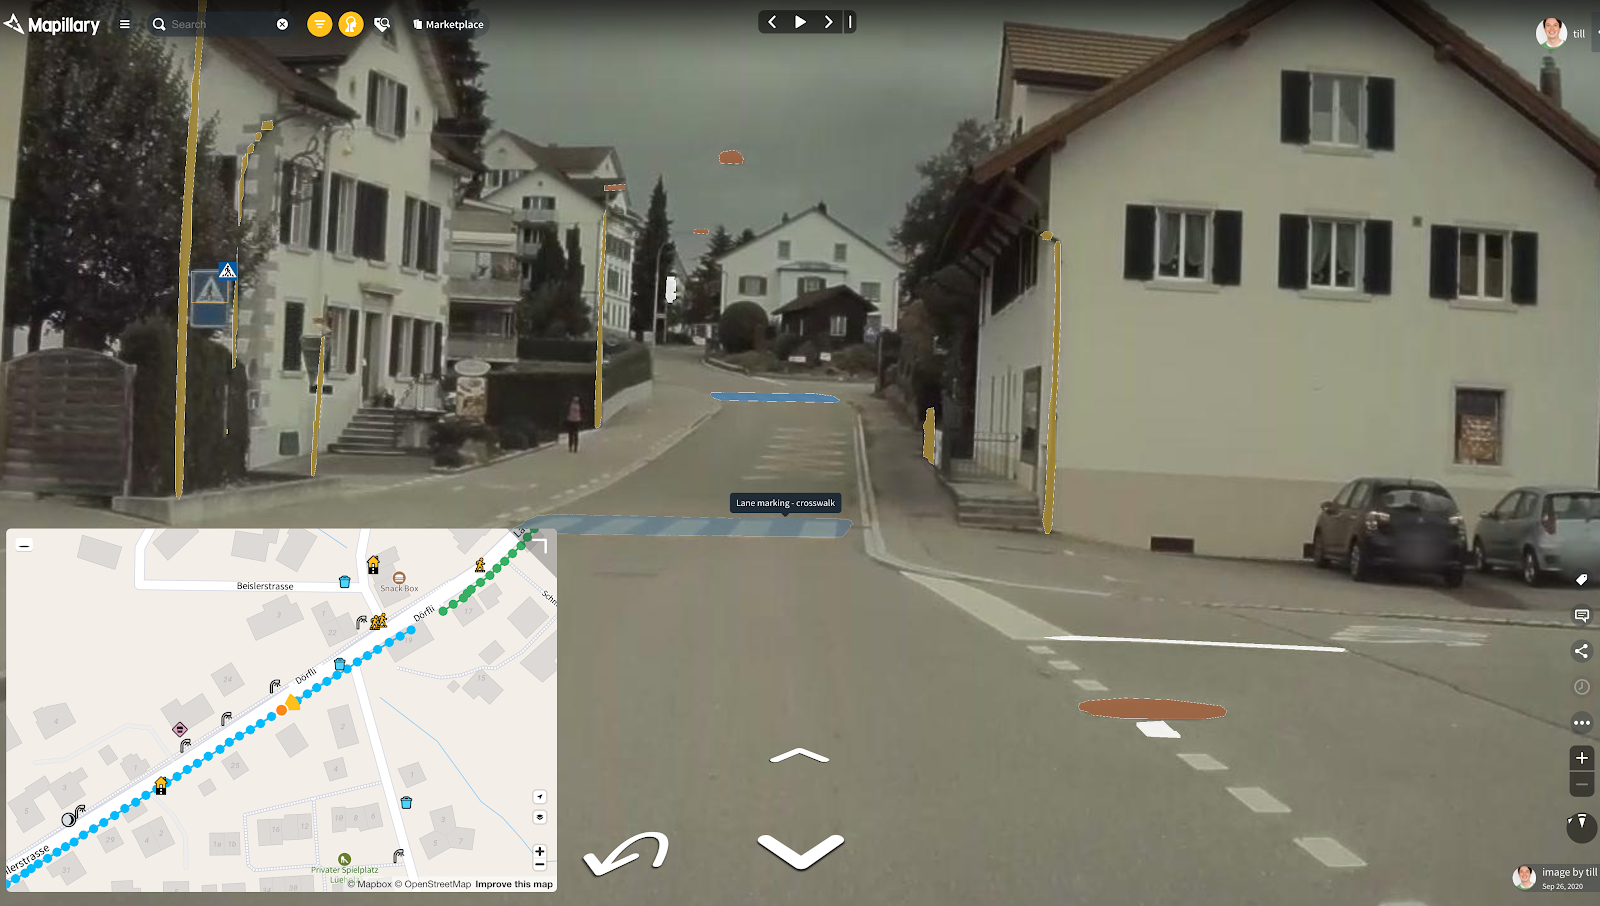 Tesla image after uploading to Mapillary.